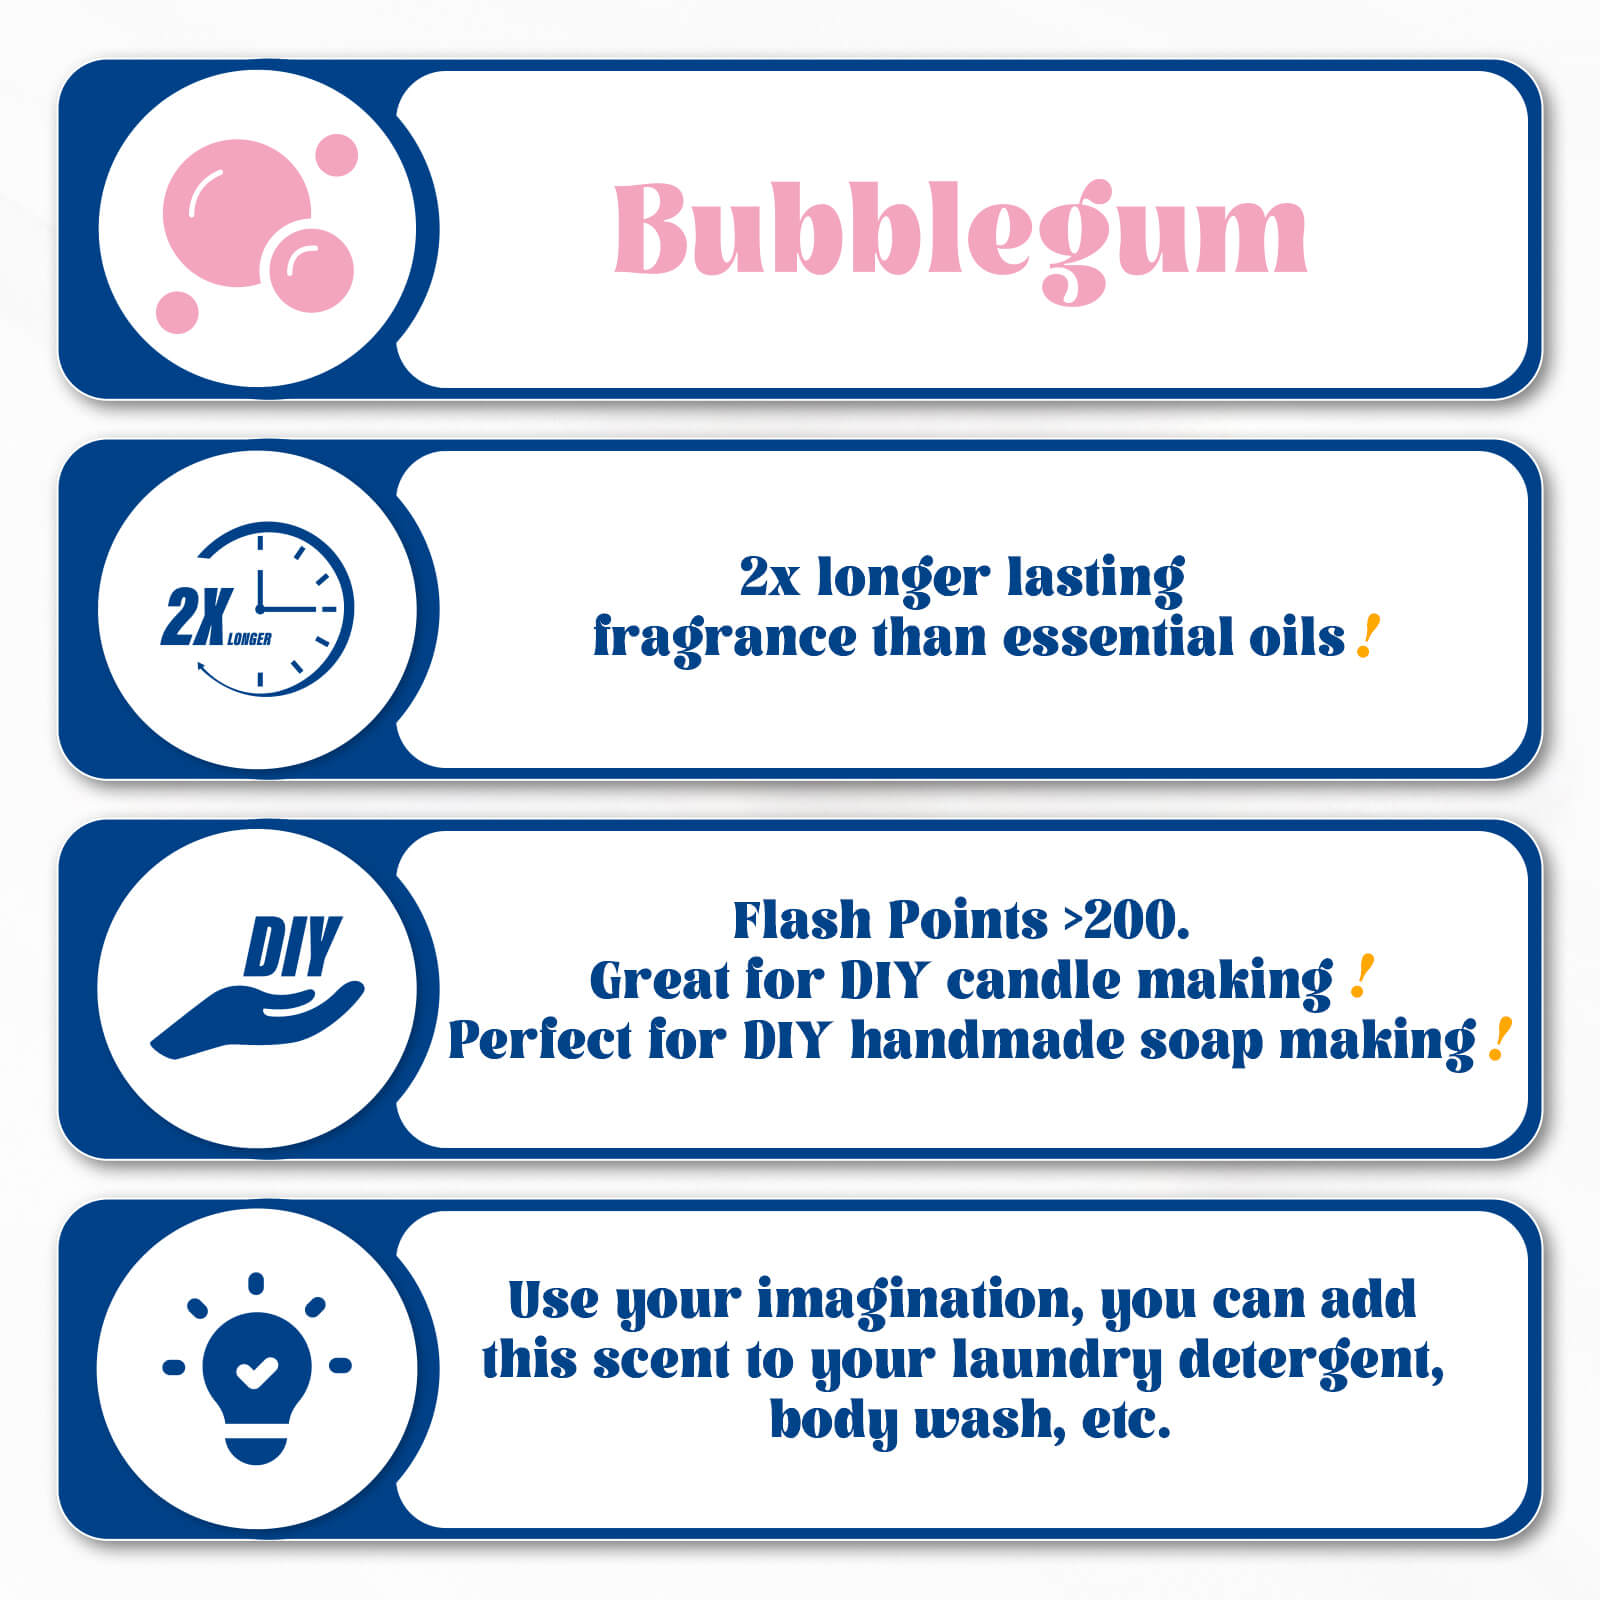 Bubble Gum Fragrance Oil